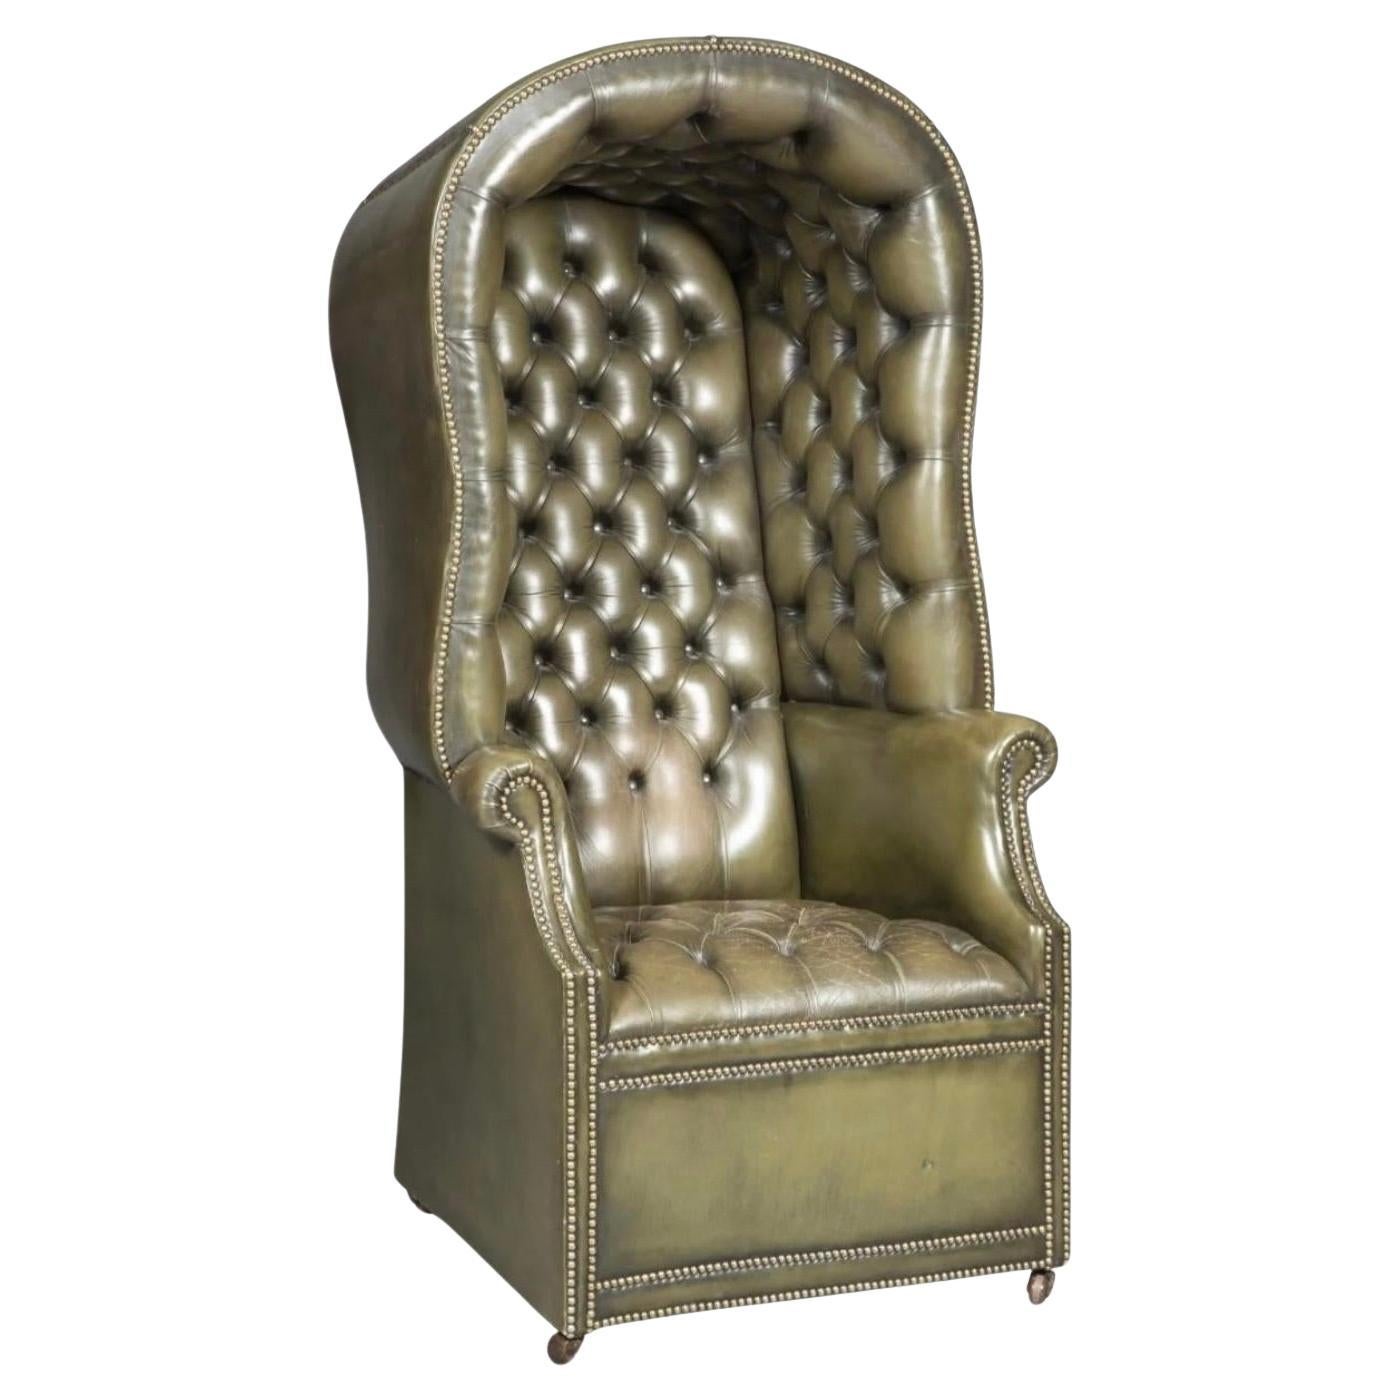 Englischer Porter's Chair